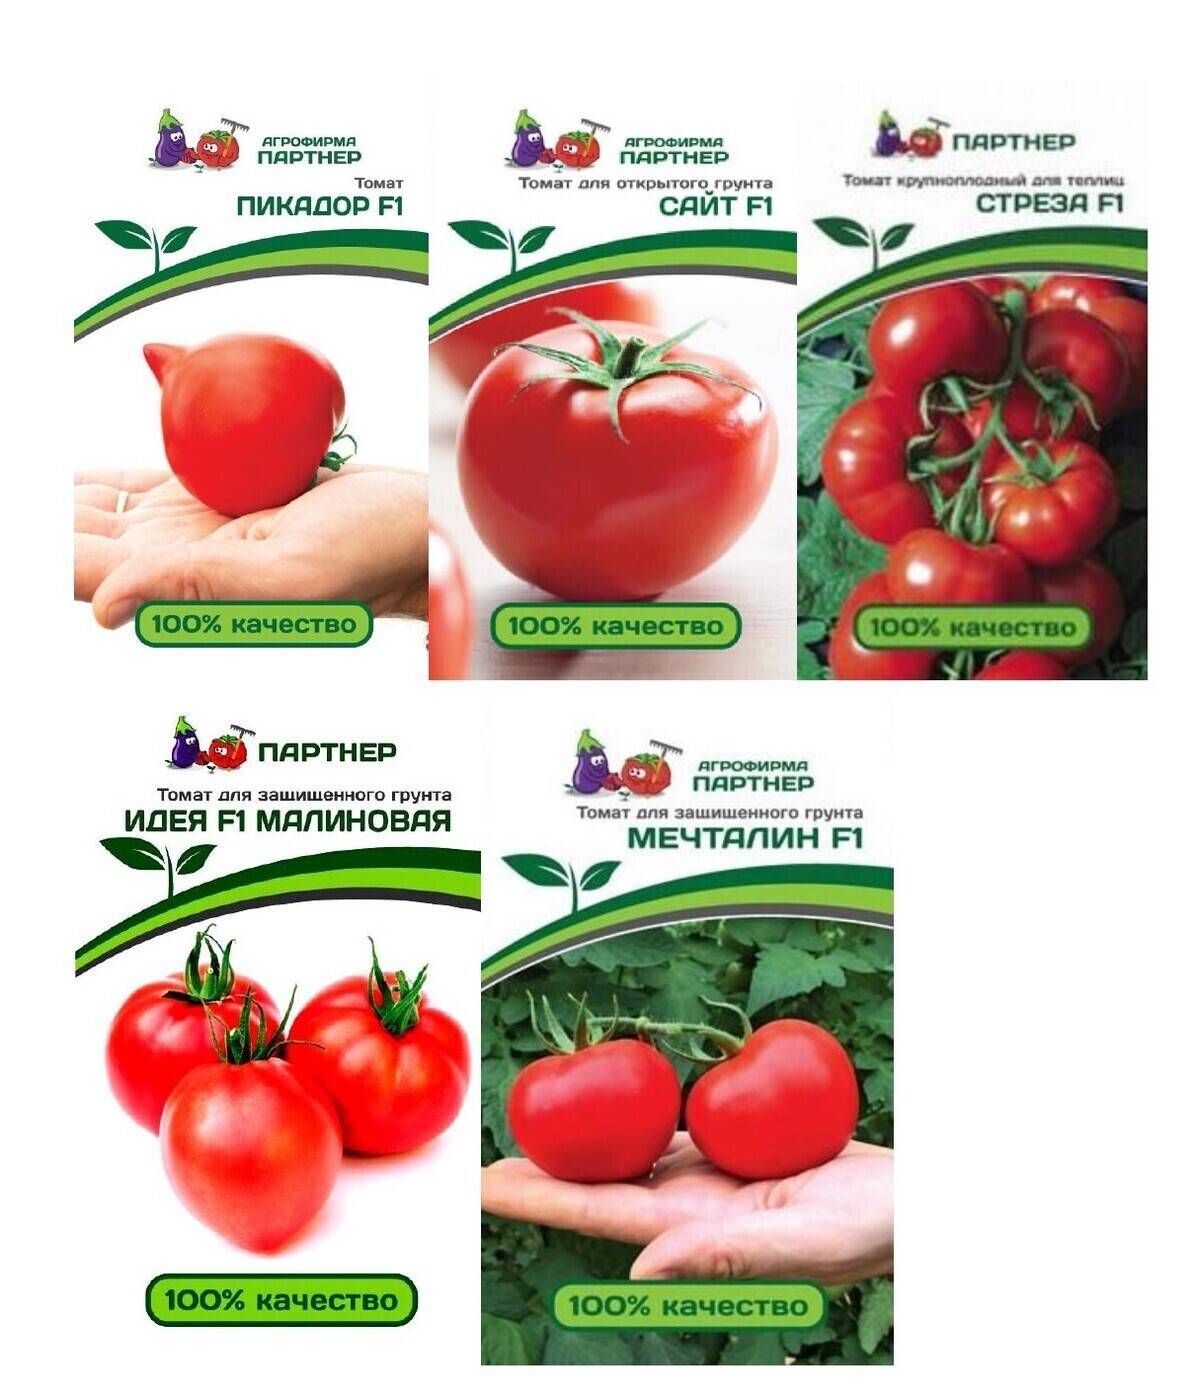 Семена томат бокеле f1: описание сорта, фото. купить с доставкой или почтой россии.